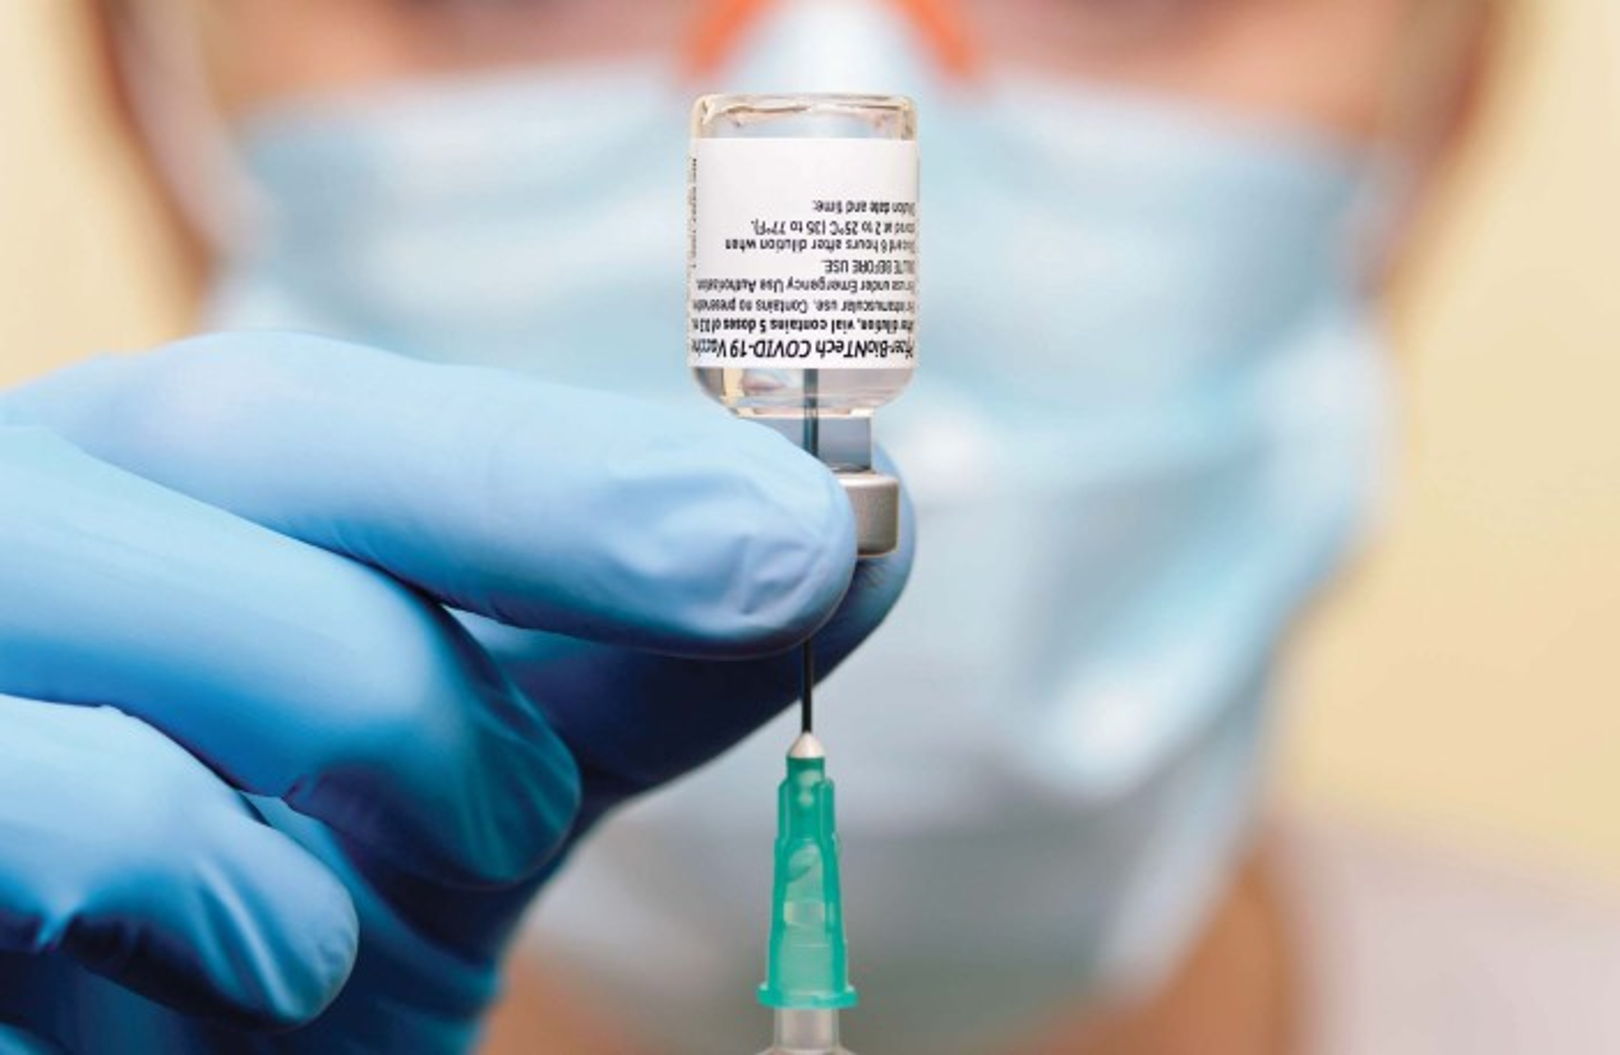 Publicación en Instagram induce a error sobre la vacuna…